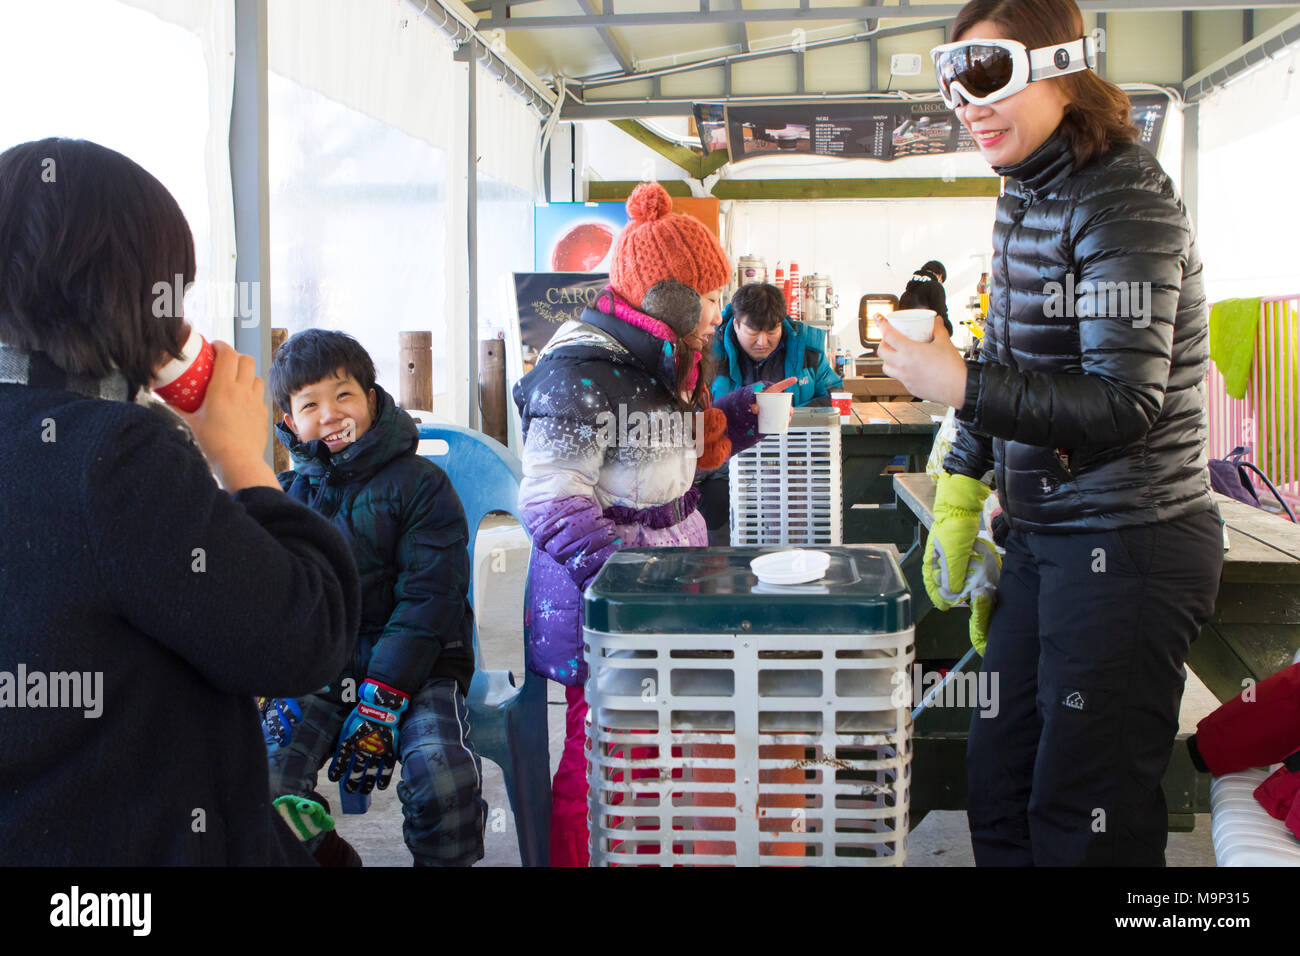 Un asiático busca familia es el calentamiento en el interior de una tienda de campaña, junto a un calentador, con chocolate caliente. Yongpyong (Valle del dragón) Estación de Esquí es una estación de esquí en Corea del Sur, ubicada en Daegwallyeong-myeon, Pyeongchang, Gangwon-do. Es el mayor complejo de esquí y snowboard en Corea. Yongpyong acogerá la técnica eventos de esquí alpino de los Juegos Olímpicos y Paralímpicos de Invierno de 2018 en Pyeongchang. Algunas escenas del 2002 Sistema de Radiodifusión de Corea drama "Sonata de Invierno" fueron filmadas en el complejo. Foto de stock